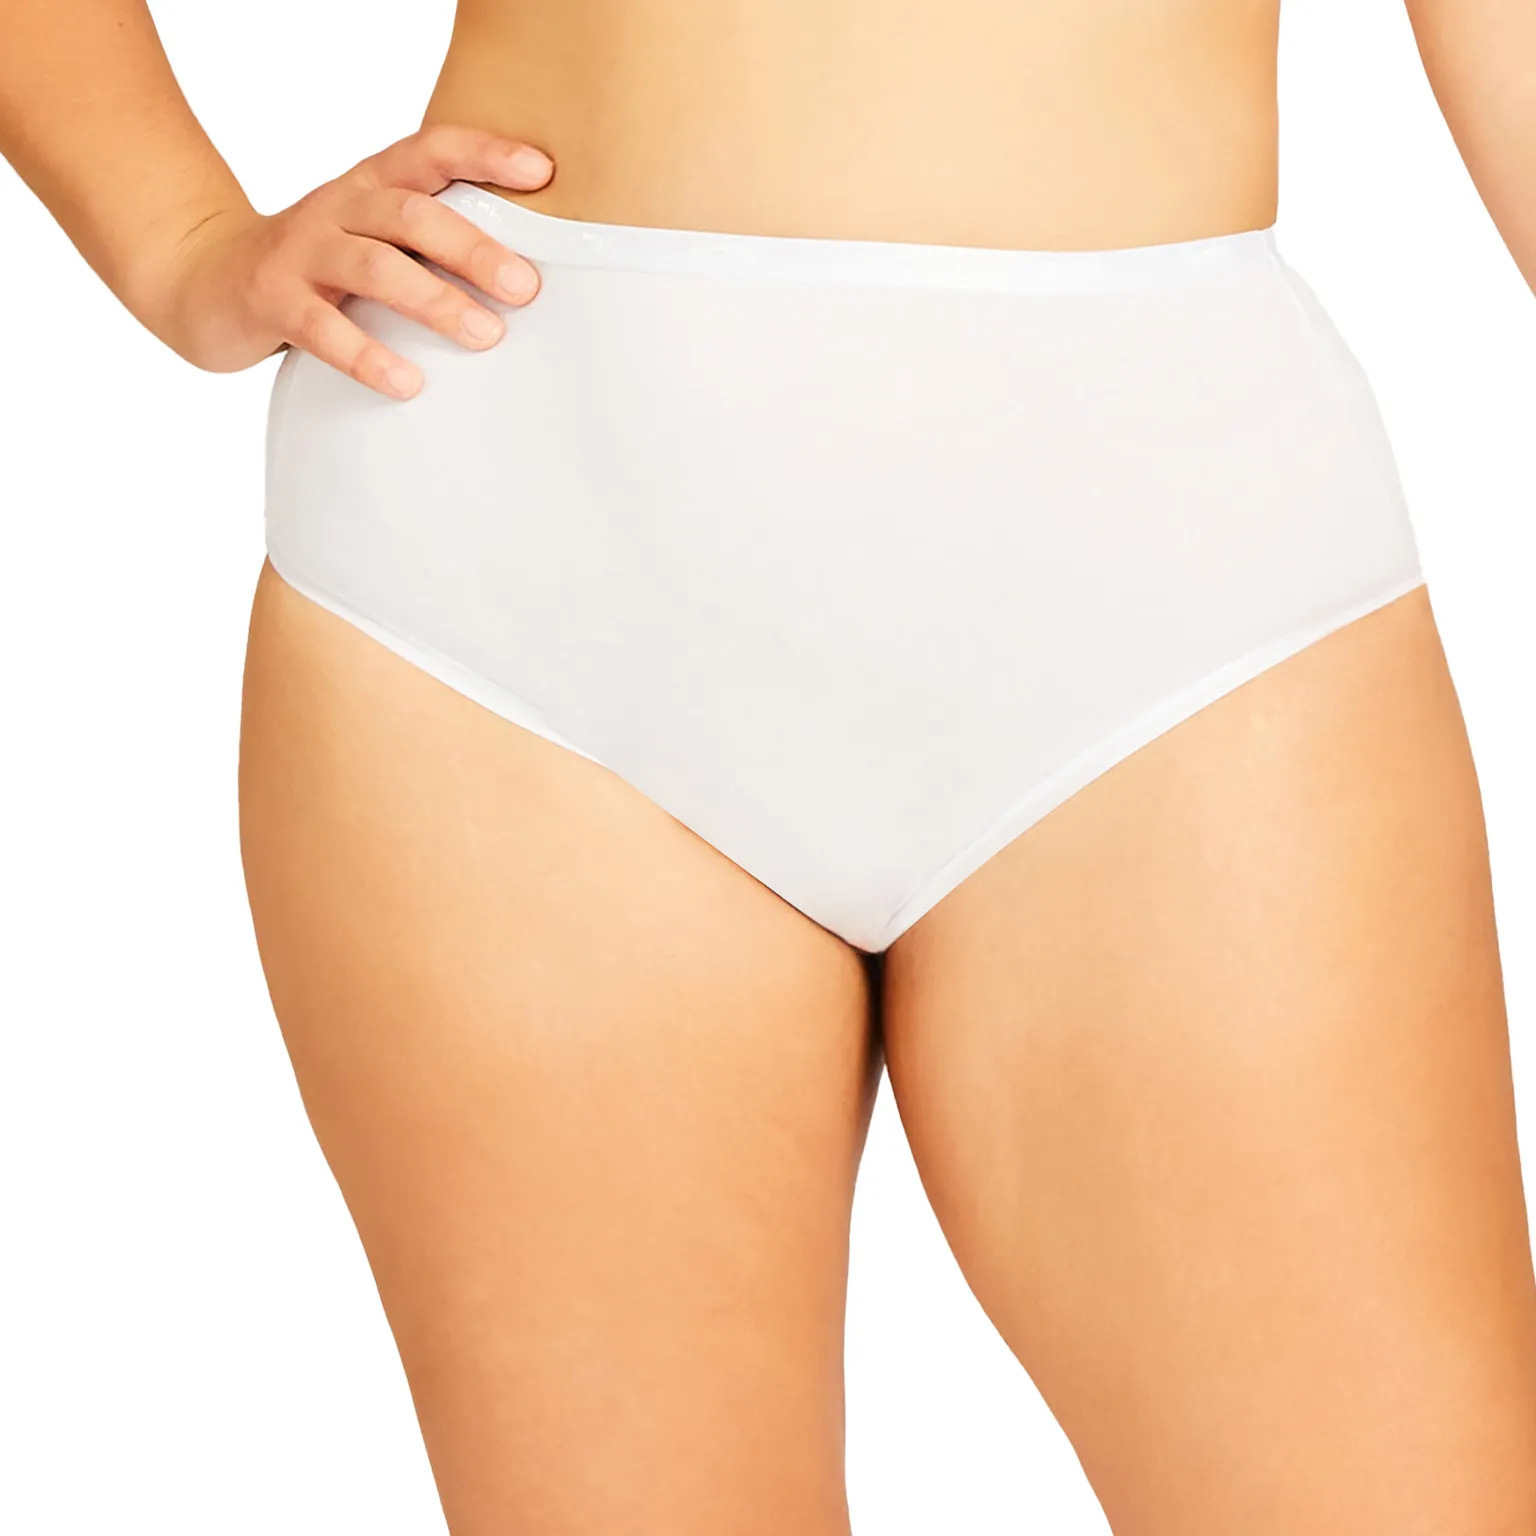 plus size panty manufacturing white brief women underwear